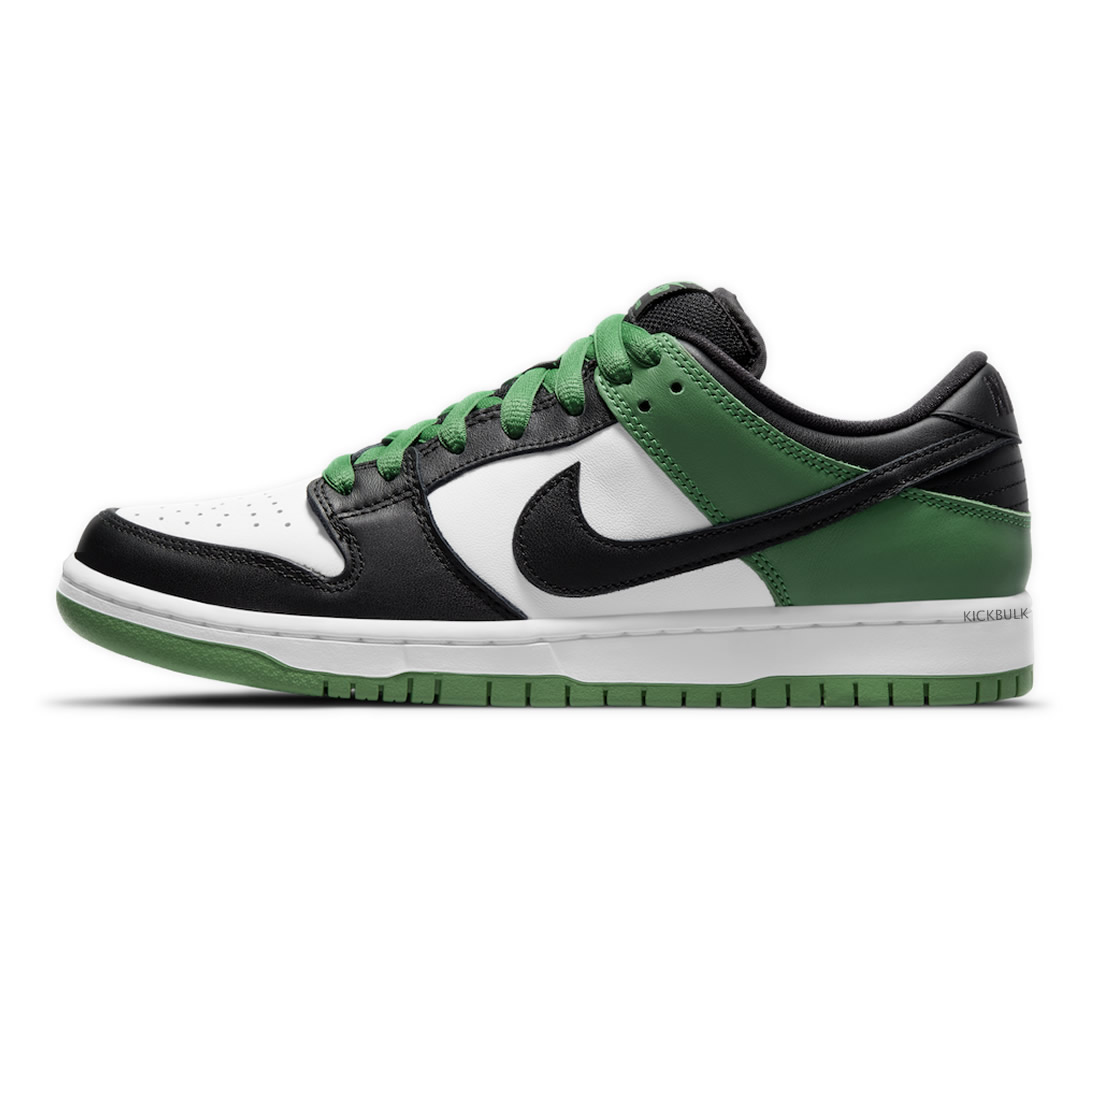 Nike Sb Dunk Low Classic Green Bq6817 302 1 - www.kickbulk.cc